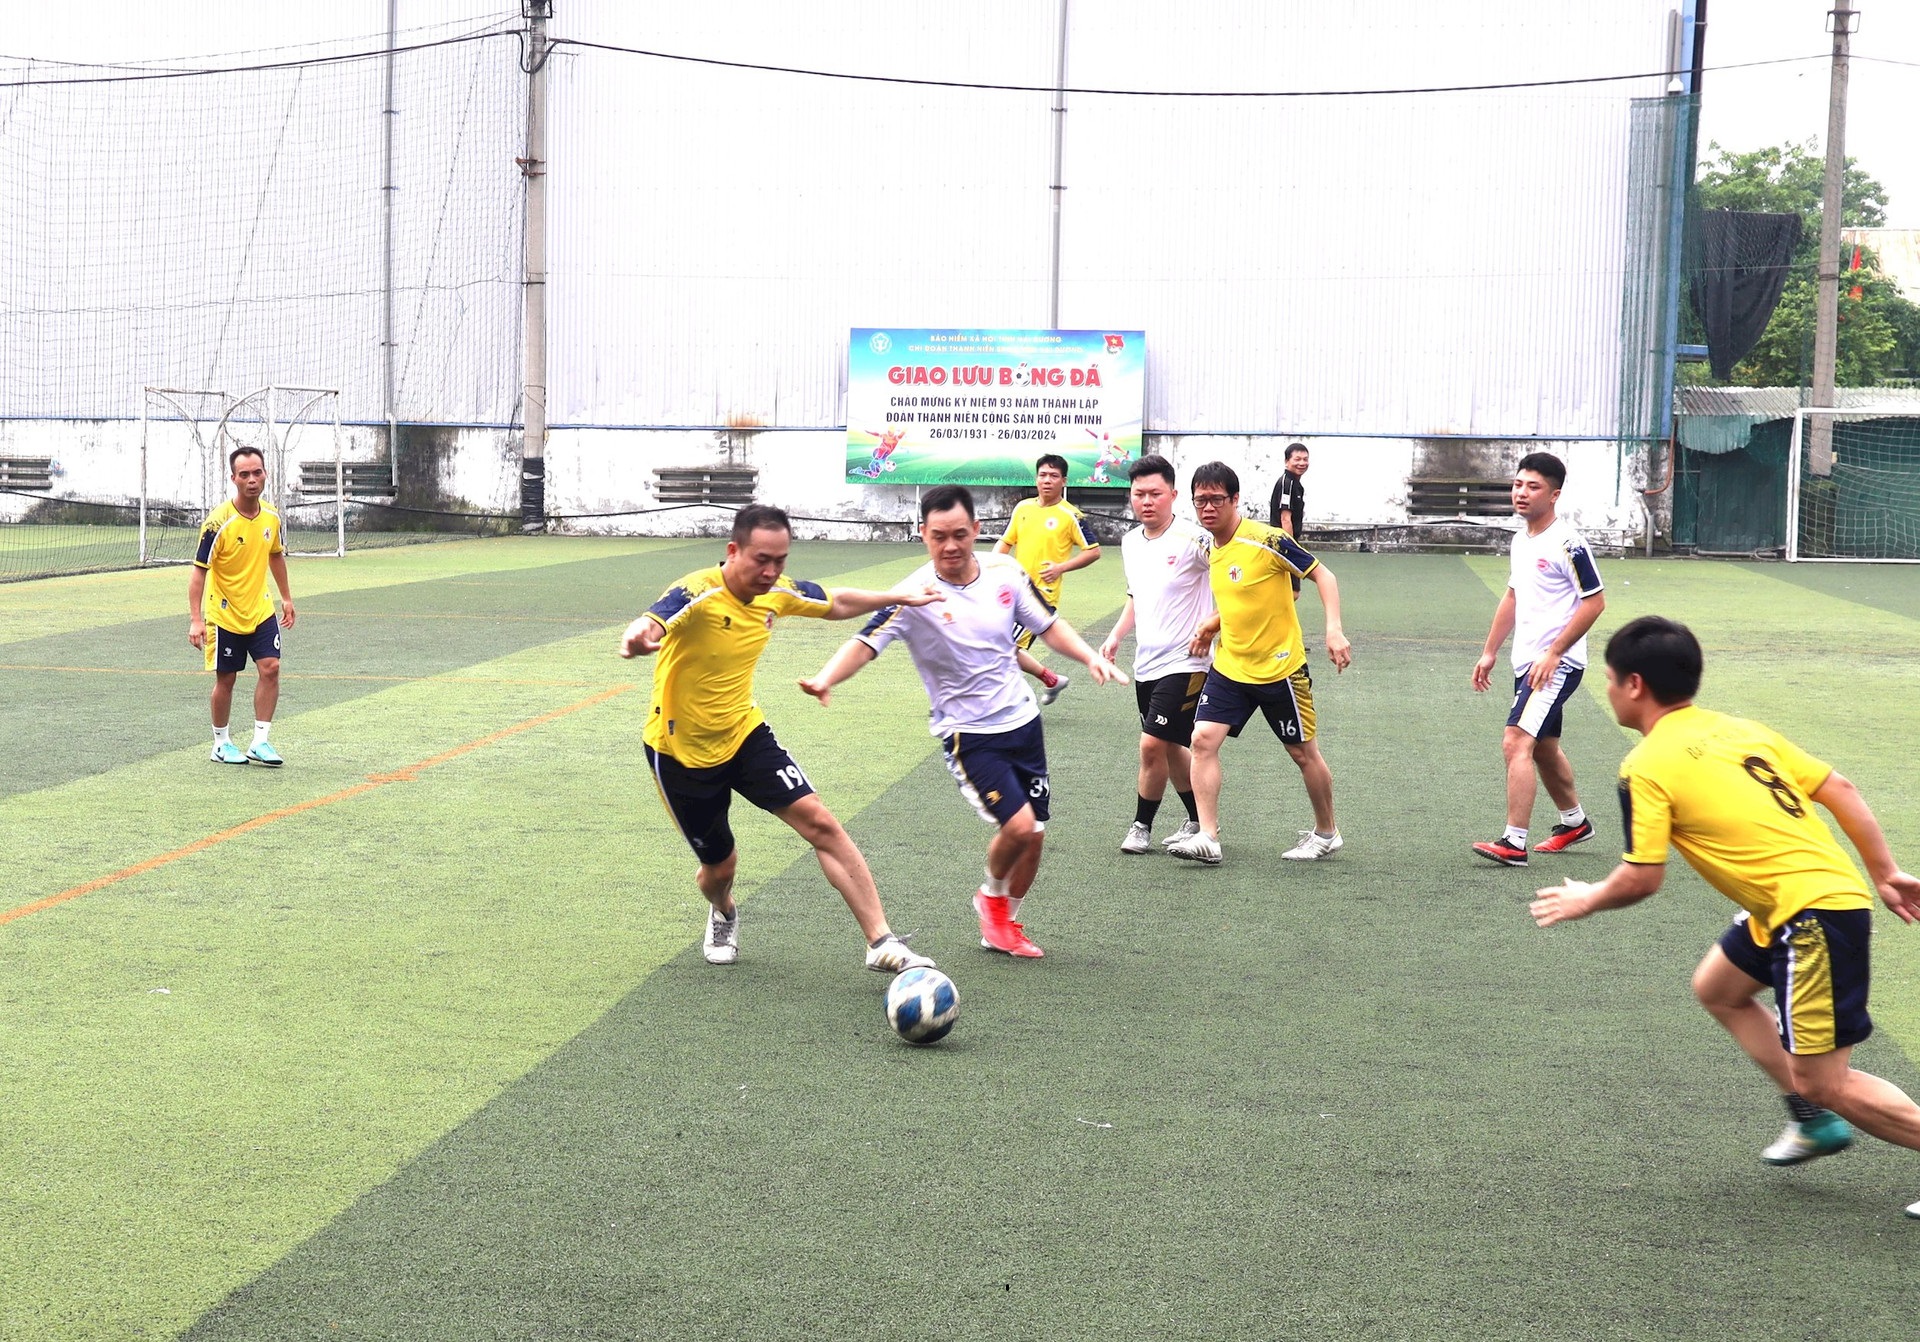 Đội phóng viên thường trú tại Hải Dương vô địch giải bóng đá nam Hội Nhà Báo tỉnh mở rộng